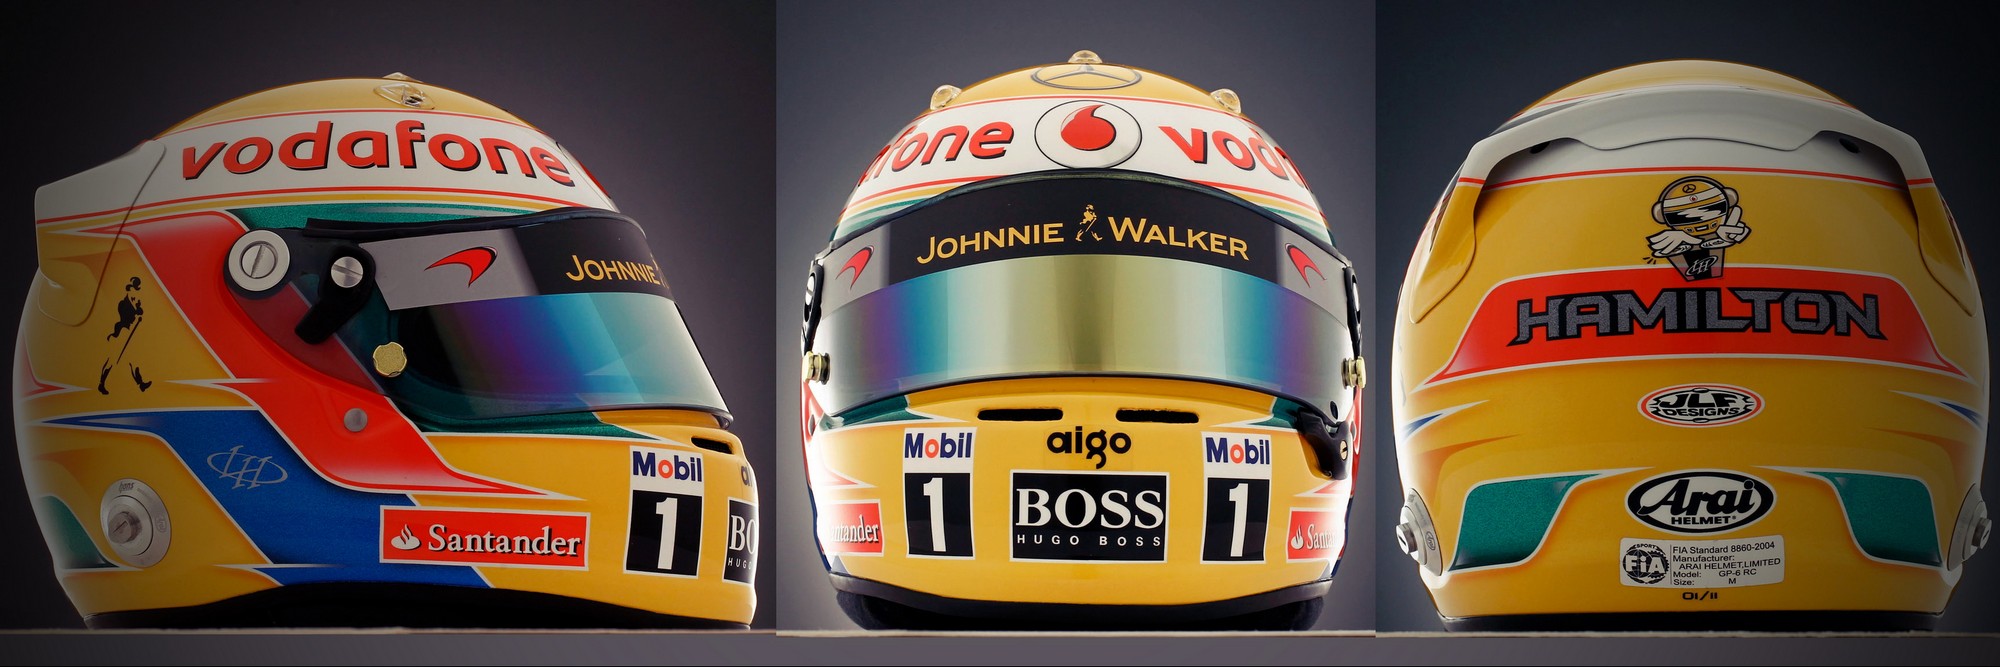 Шлем Льюиса Хэмилтона на сезон 2011 года | 2011 helmet of Lewis Hamilton